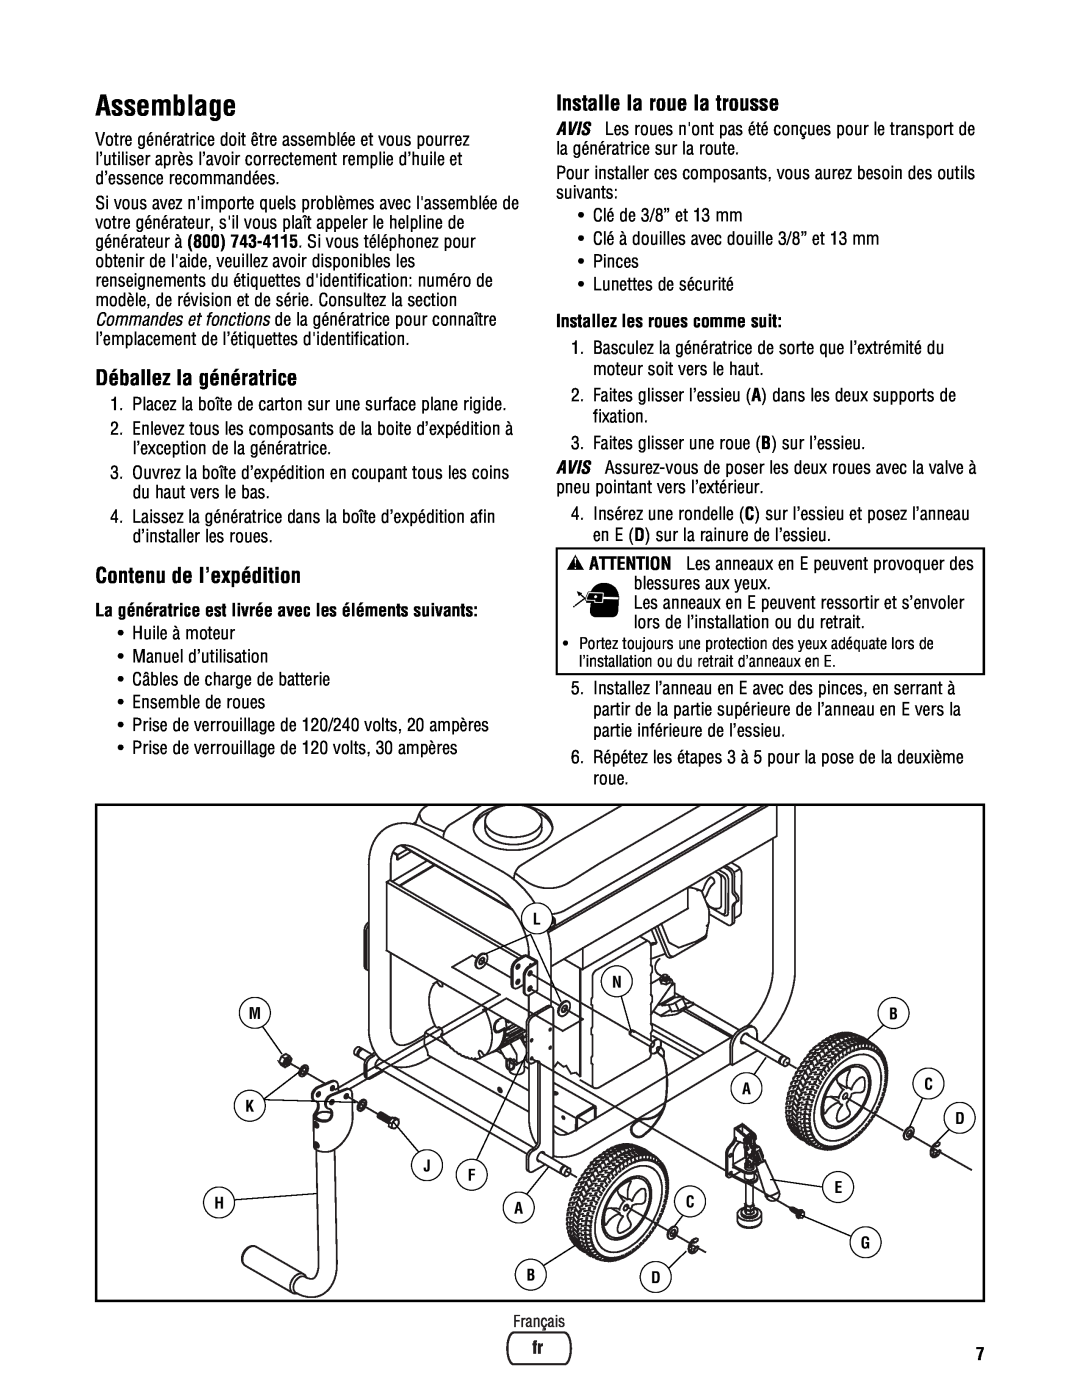 Briggs & Stratton PRO4000 manual Assemblage, Déballez la génératrice, Contenu de l’expédition, Installe la roue la trousse 